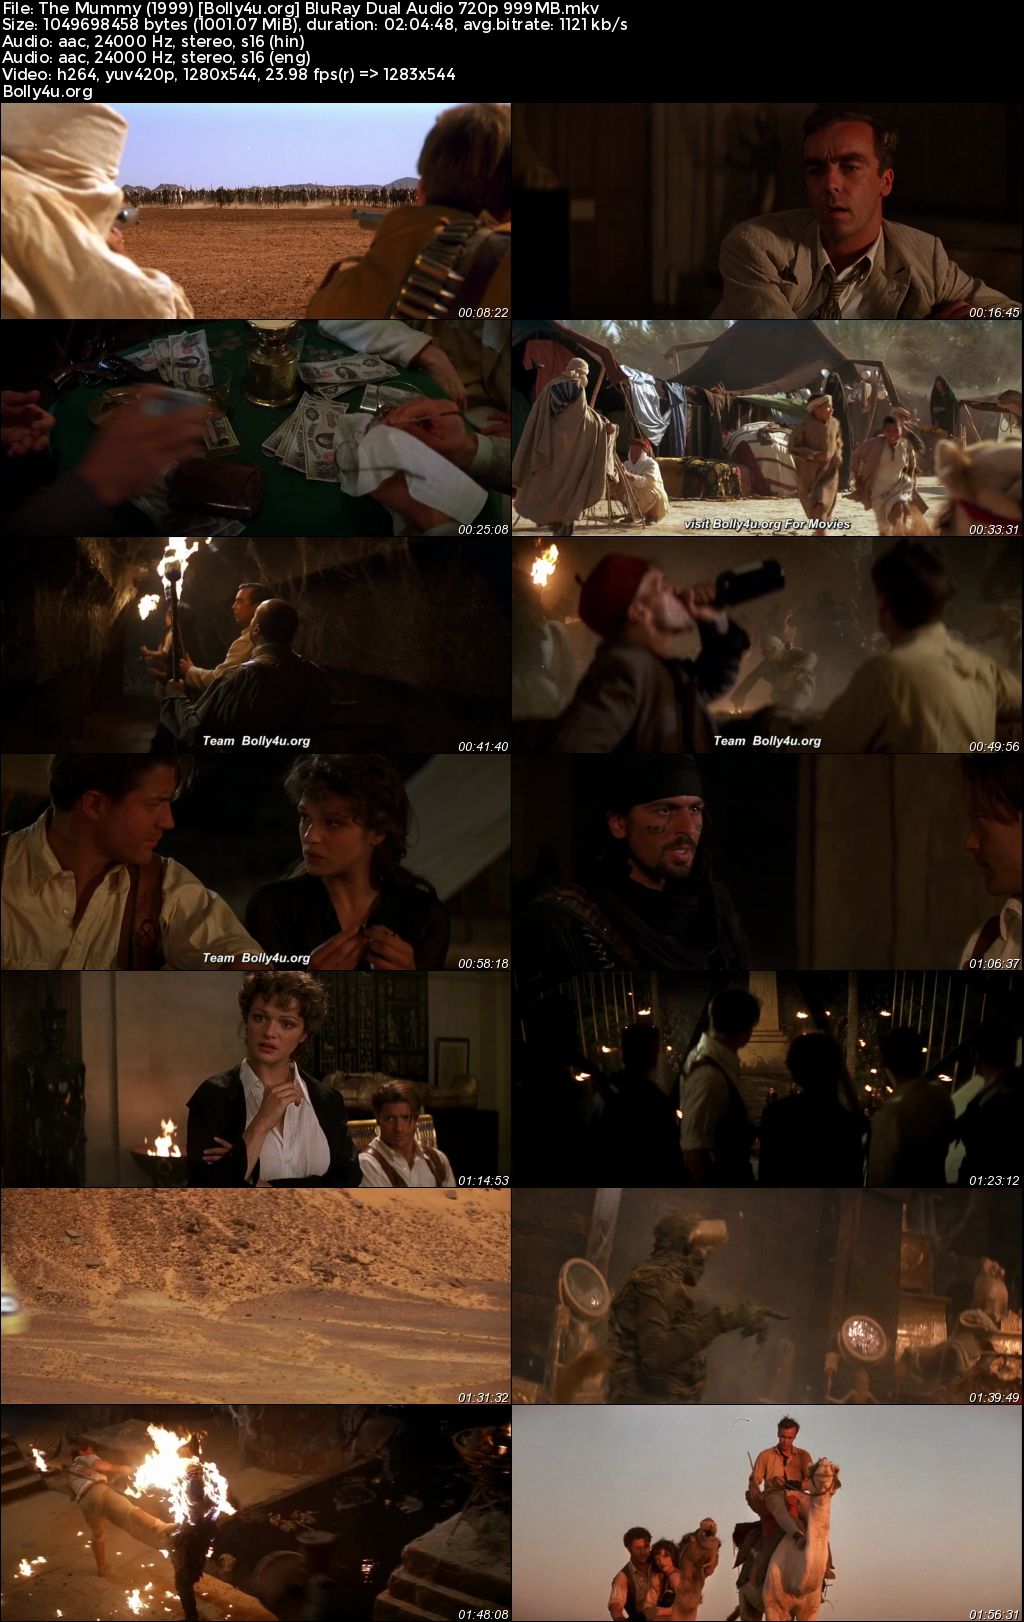 The Mummy 1999 BluRay Hindi Dual Audio Full Movie Download 1080p 720p 480p